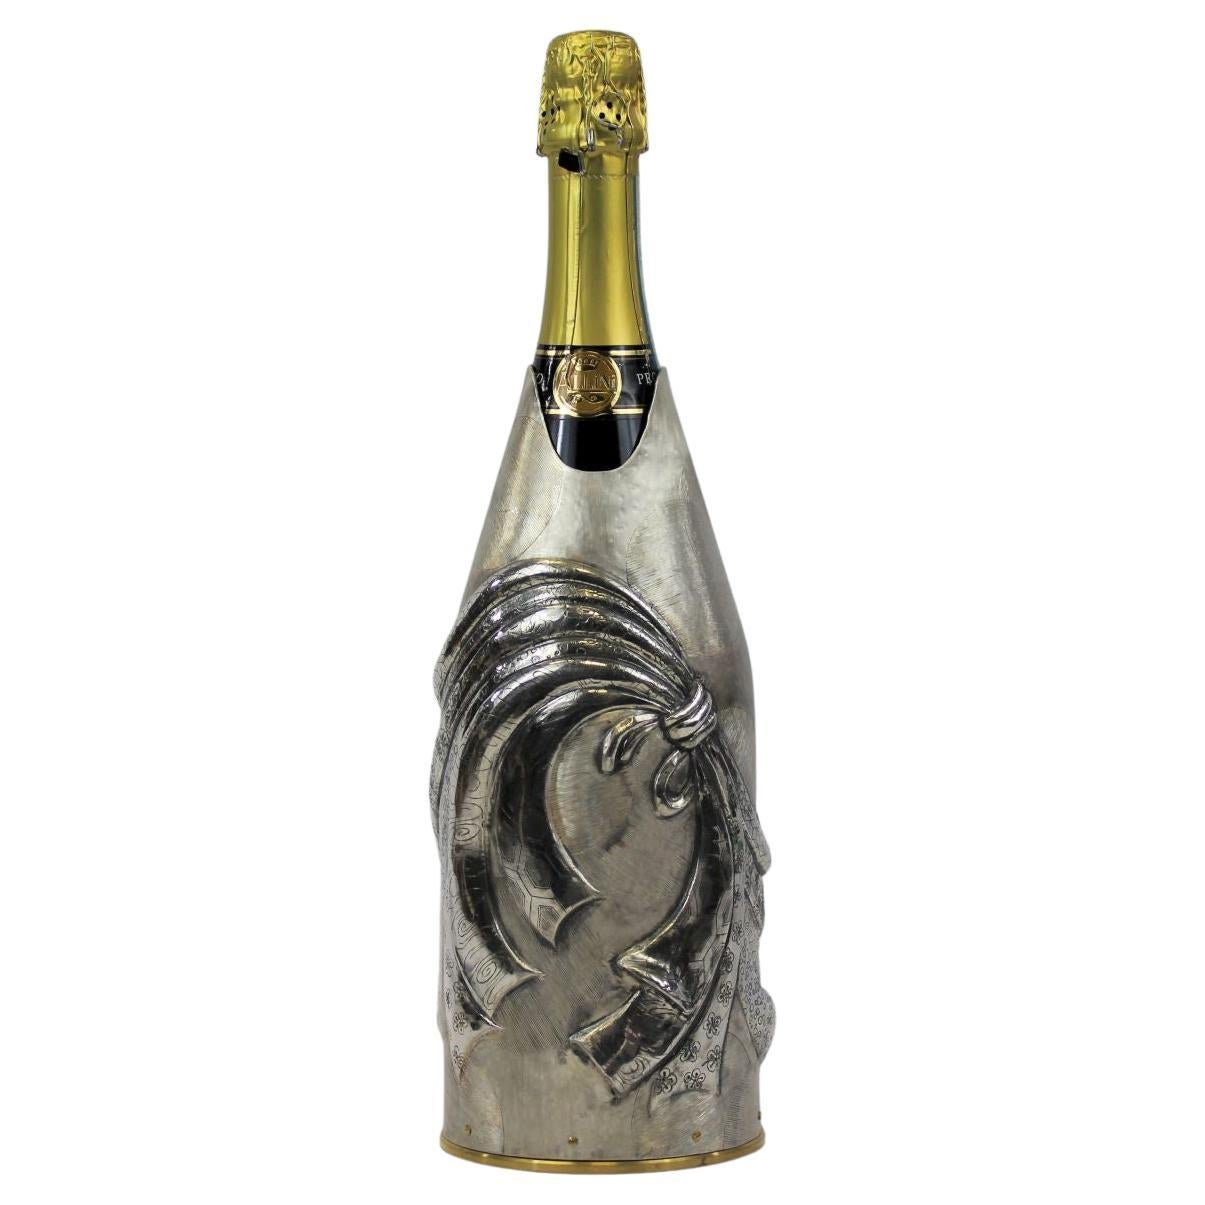 Ce Champagne K-OVER entièrement créé en argent pur 999/°° fait partie de notre Collection Work of Art.
L'artiste Mary Yoshida s'est inspirée de la tradition de l'Omamori, dans la culture japonaise.
des objets ou des symboles pour souhaiter bonne